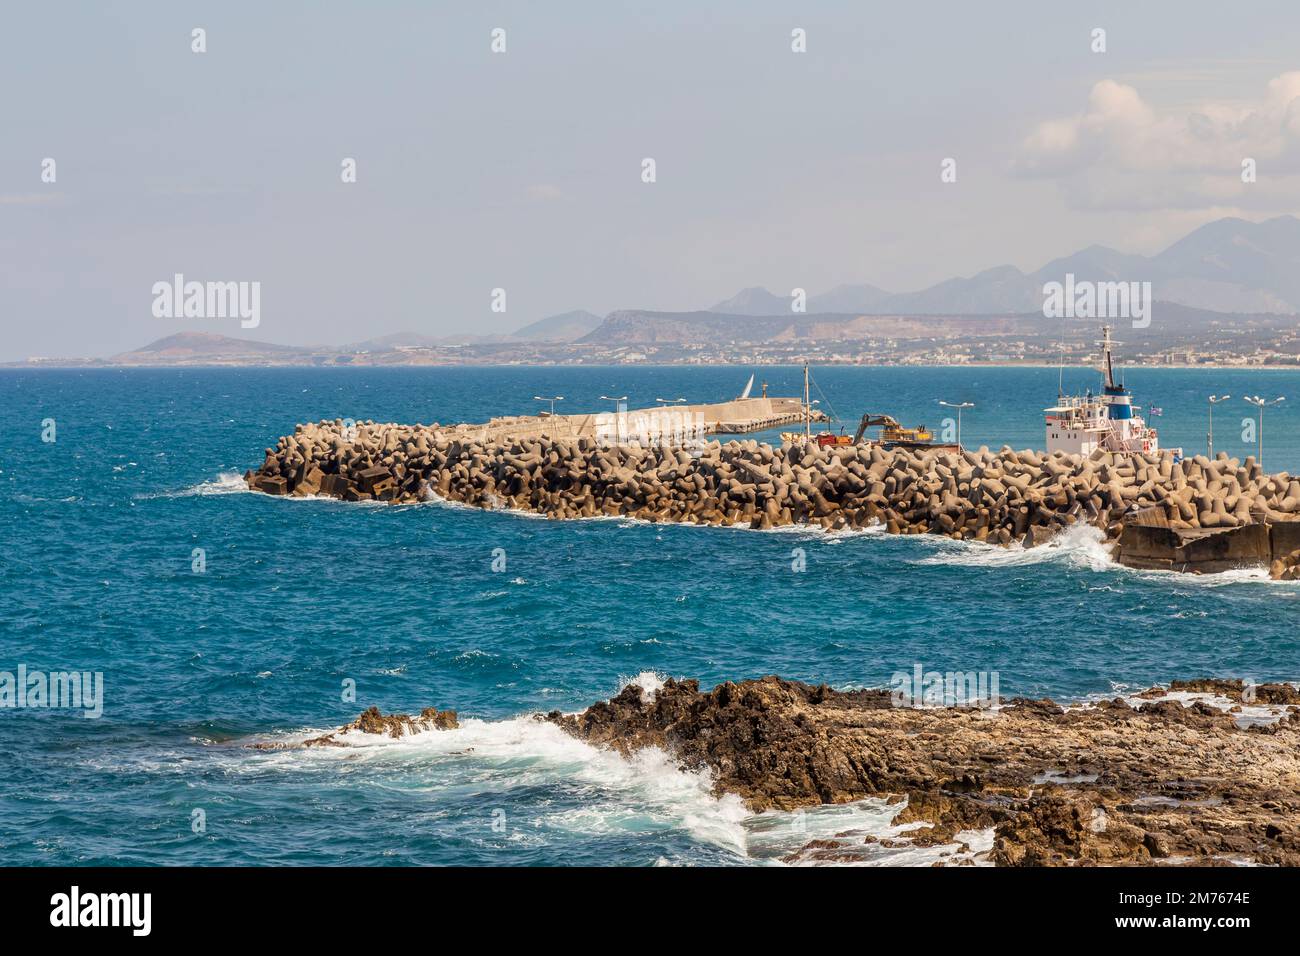 Defensive Sea Wall off the coast of Crete, Greece. Stock Photo